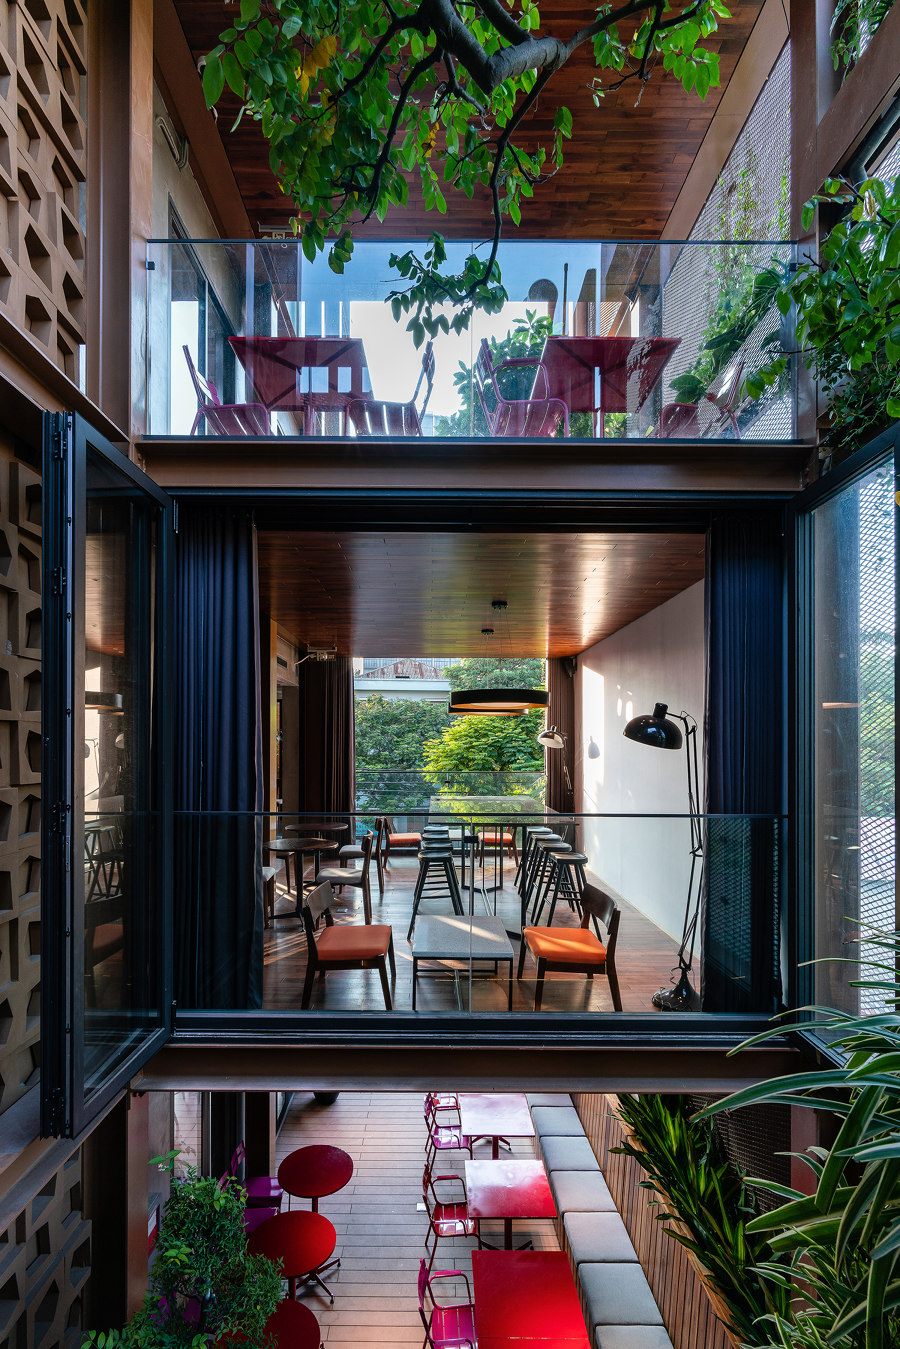 Organic Café von G8A Architecture & Urban Planning | Restaurants